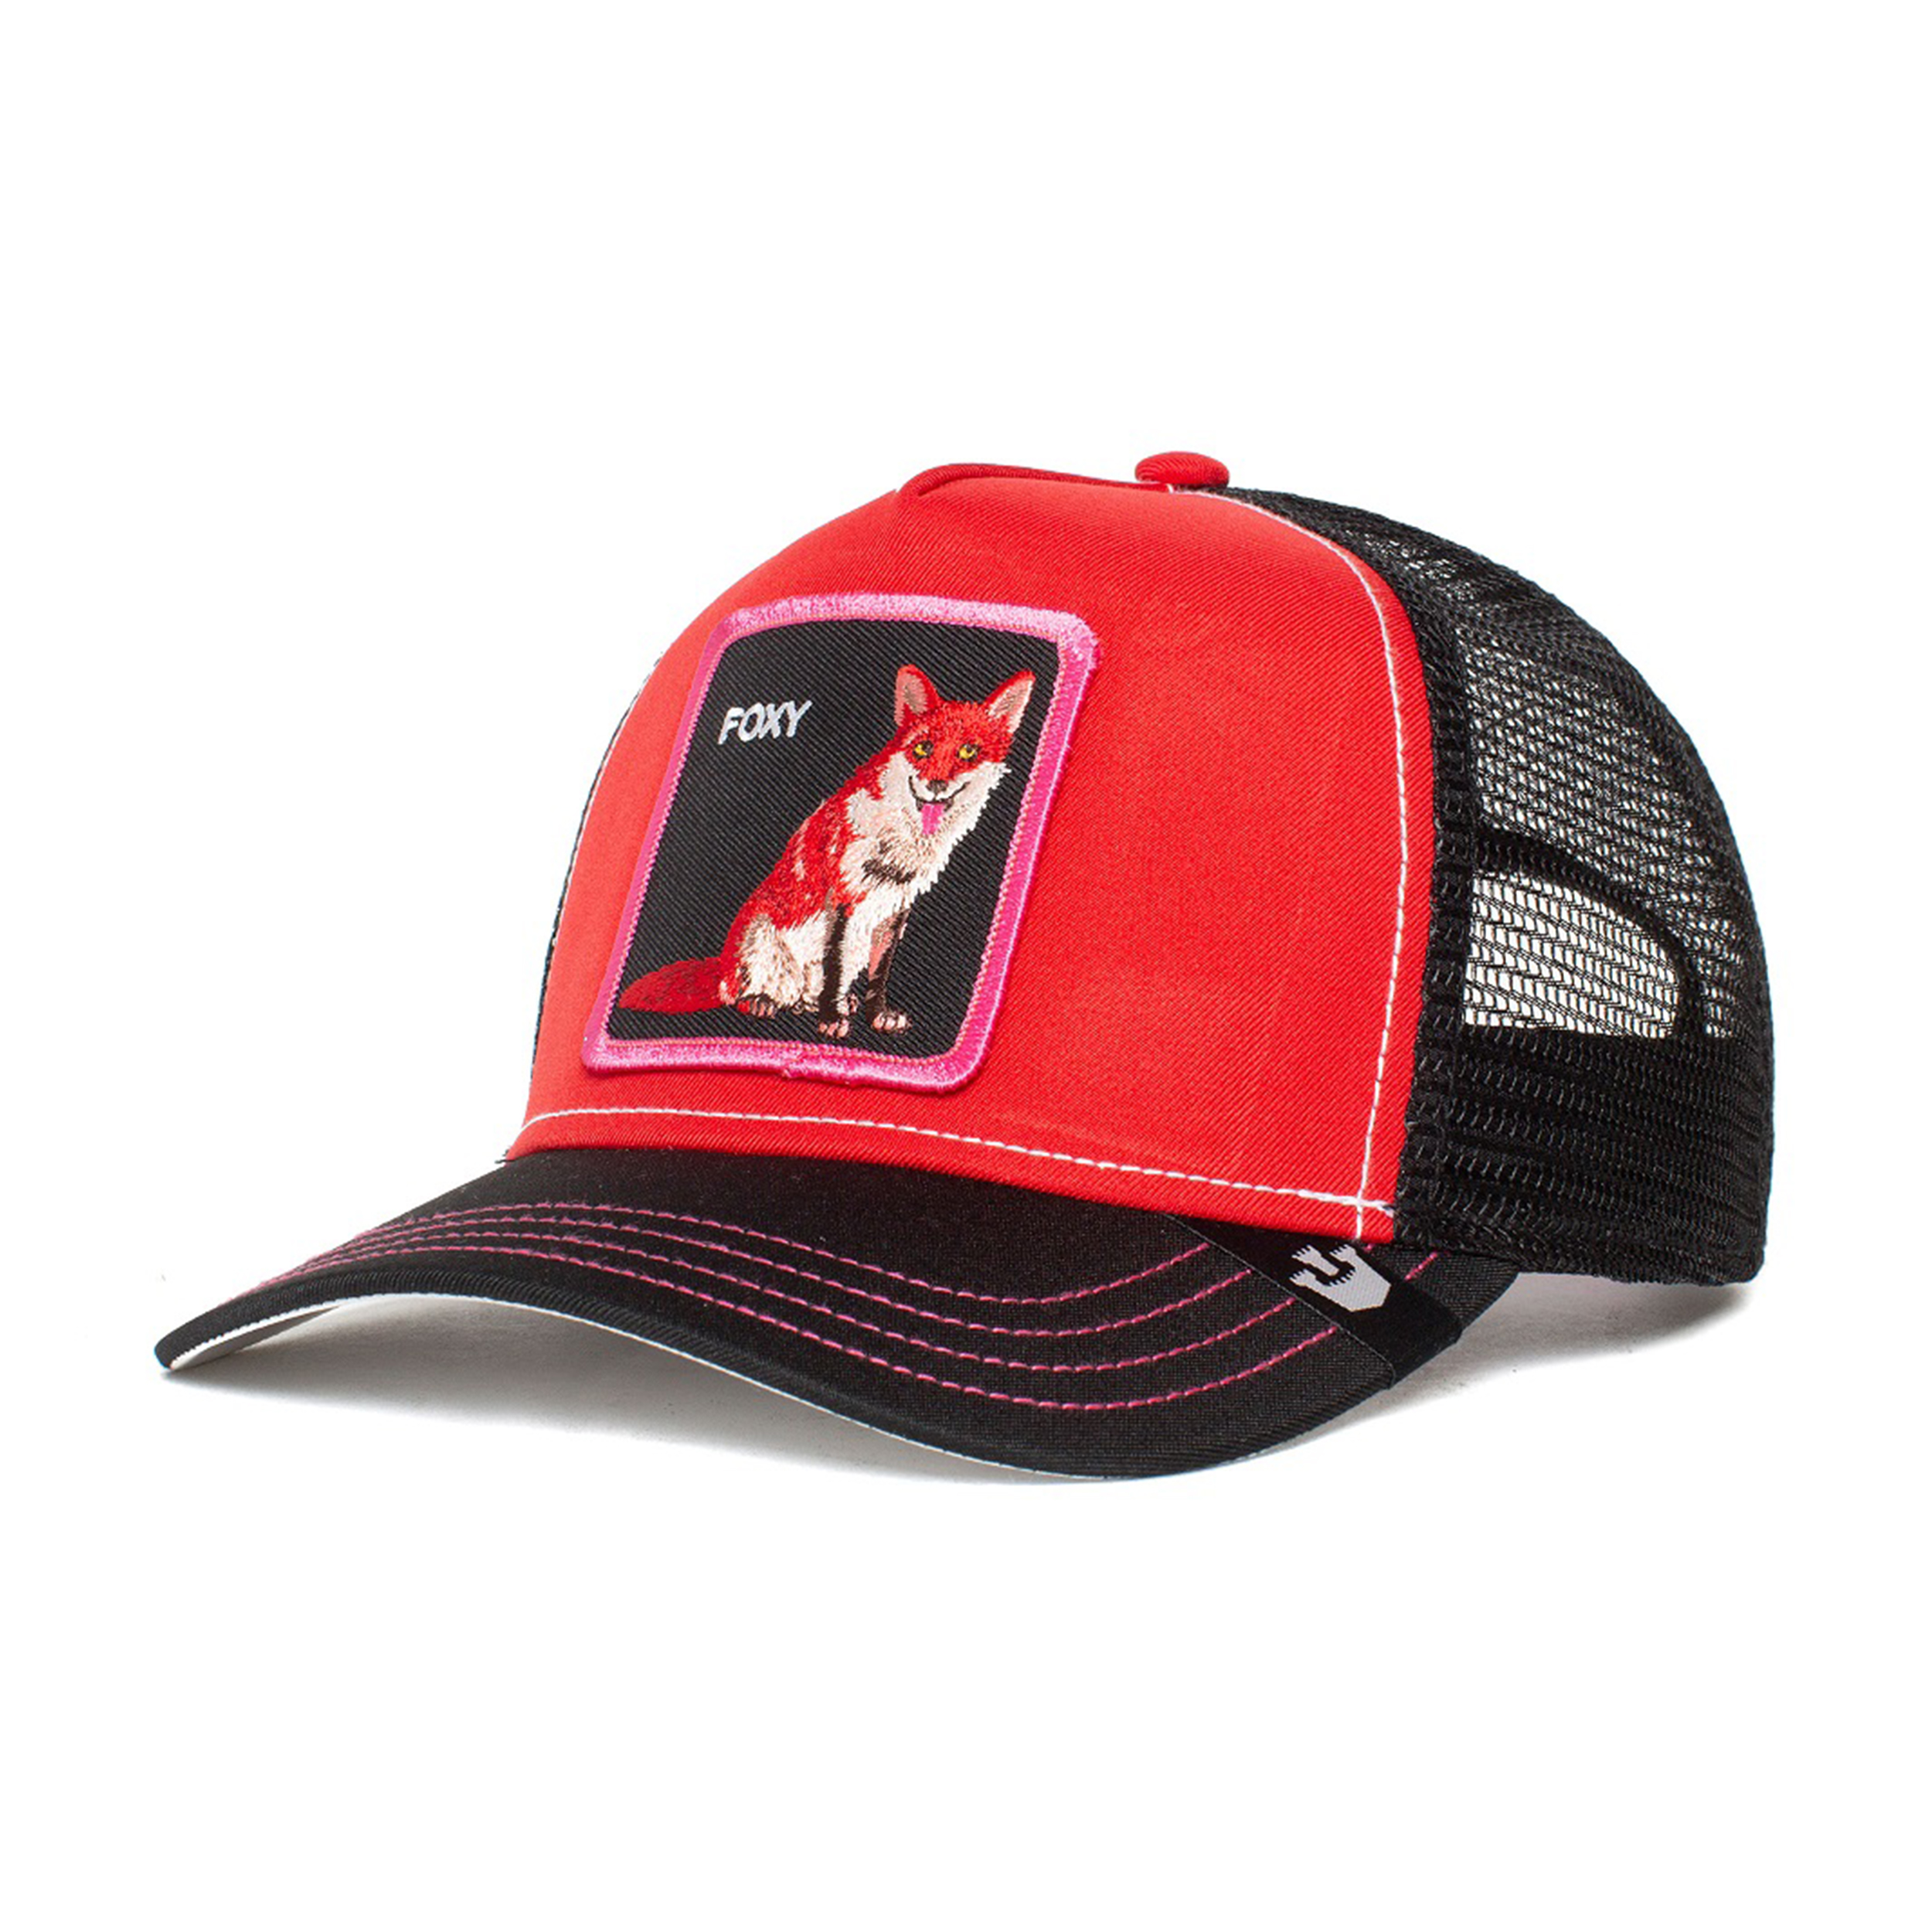 نکته خرید - قیمت روز کلاه کپ گورین براز مدل FOX TRIP 101-1014 خرید